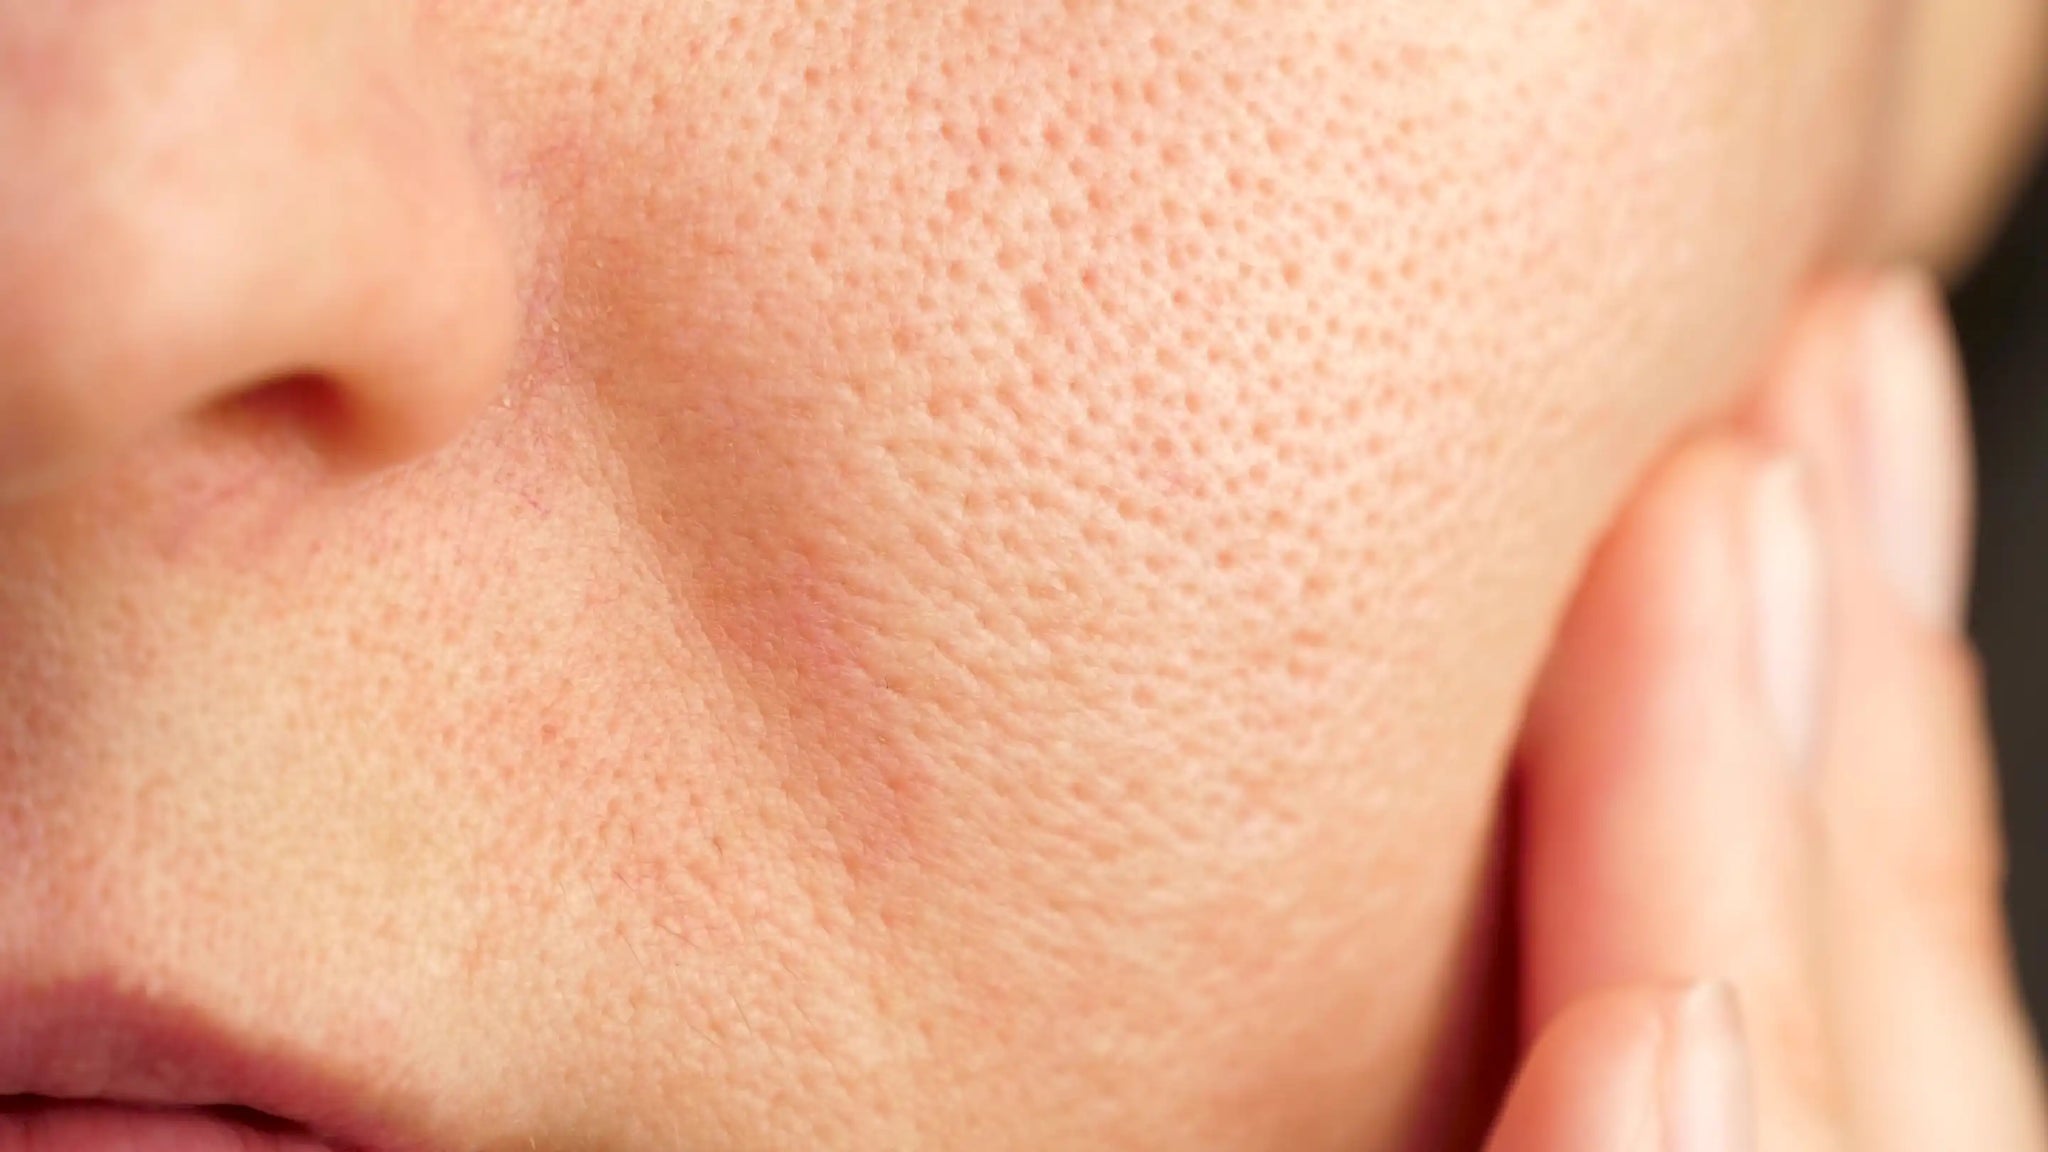 Glowing Skin - Enlarged pores